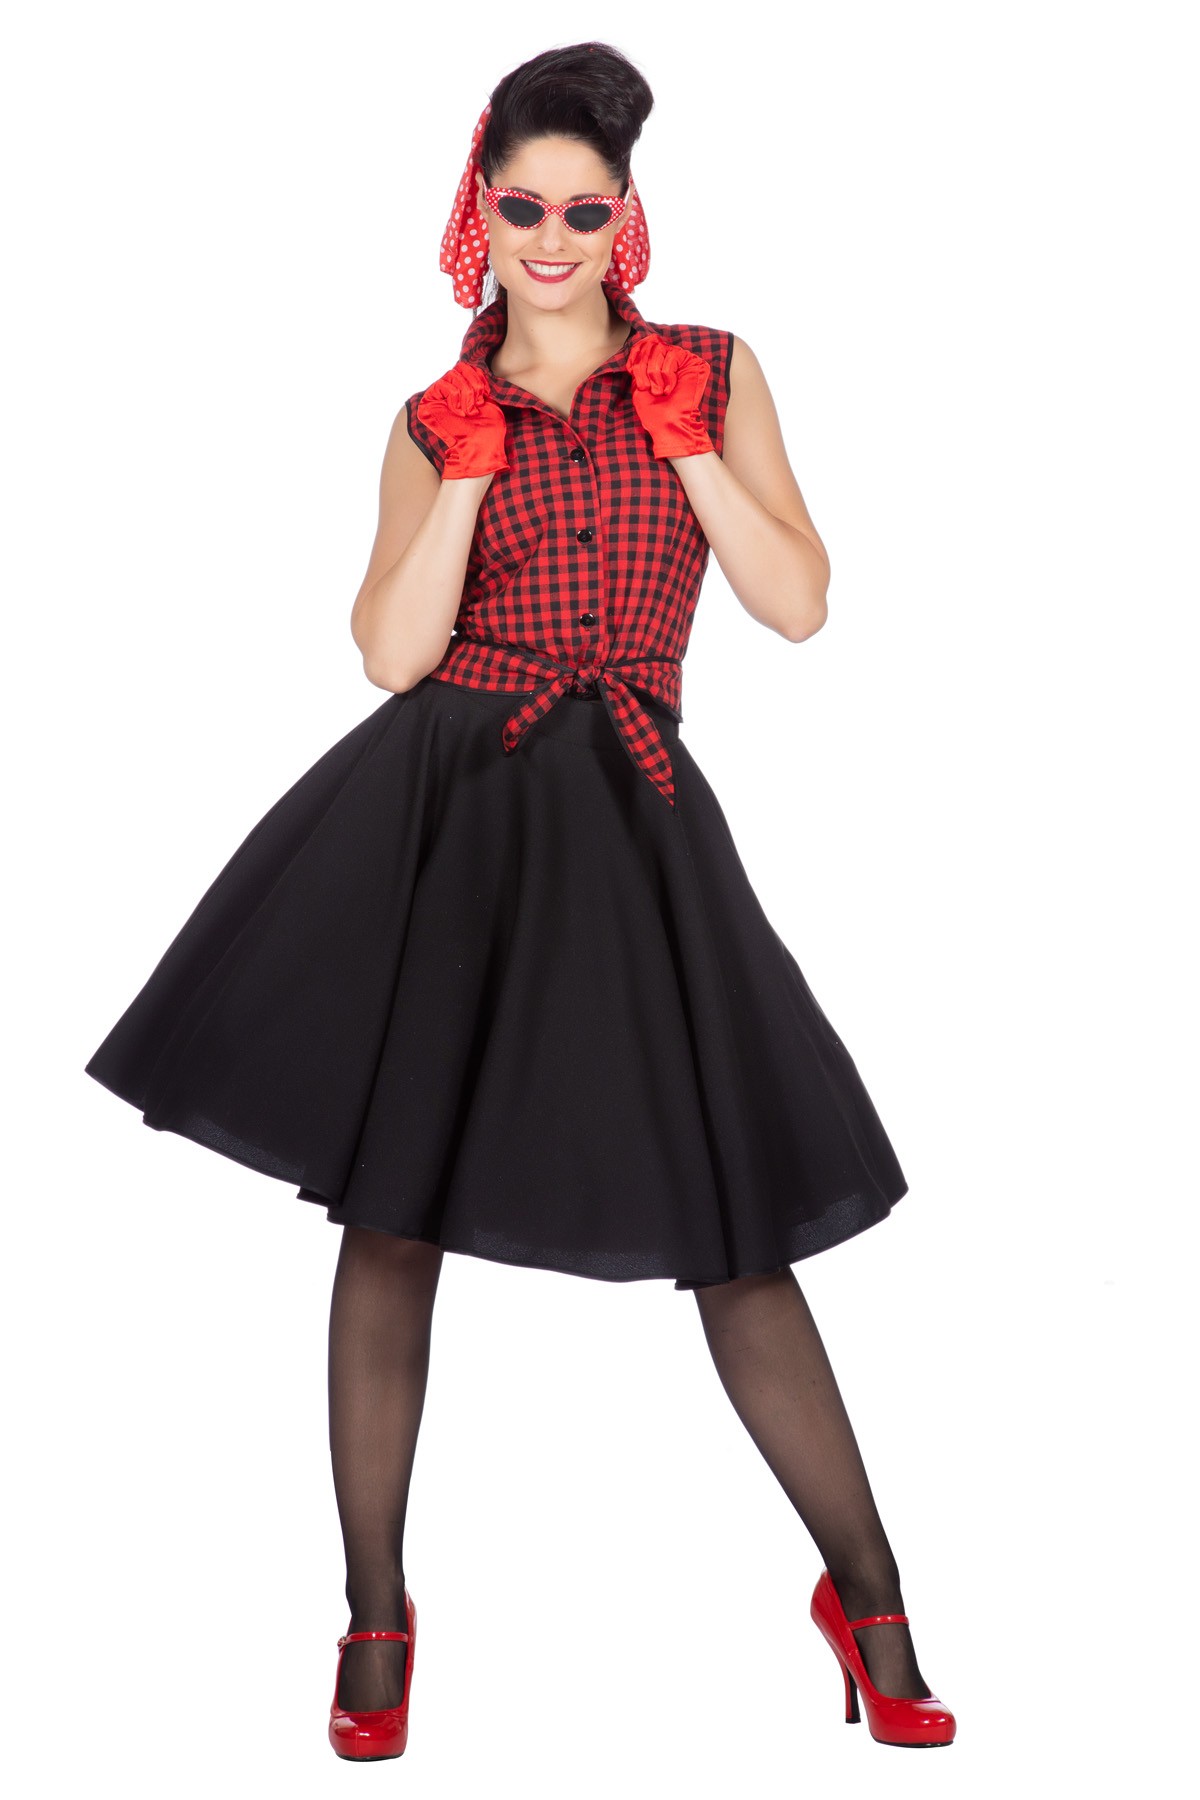 Wonderbaar Rockabilly outfit dames Rizzo | Jokershop.be - Rockabilly kleding TN-86